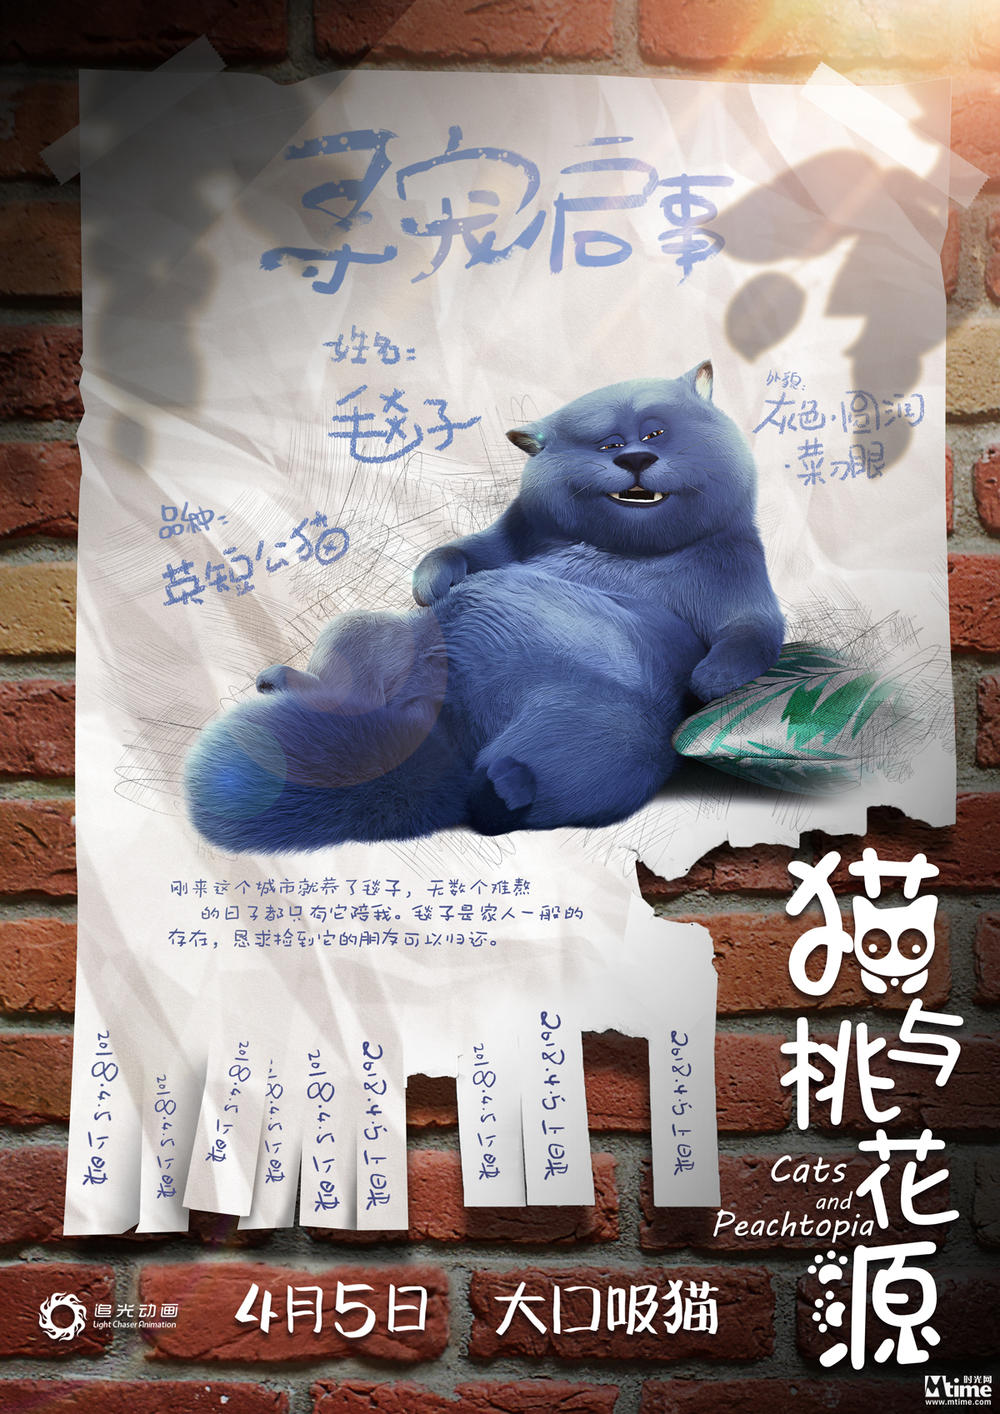 《猫与桃花源》“寻宠”版海报出炉 主角父子猫“毯子”“斗篷”俘虏众多猫奴(图2)